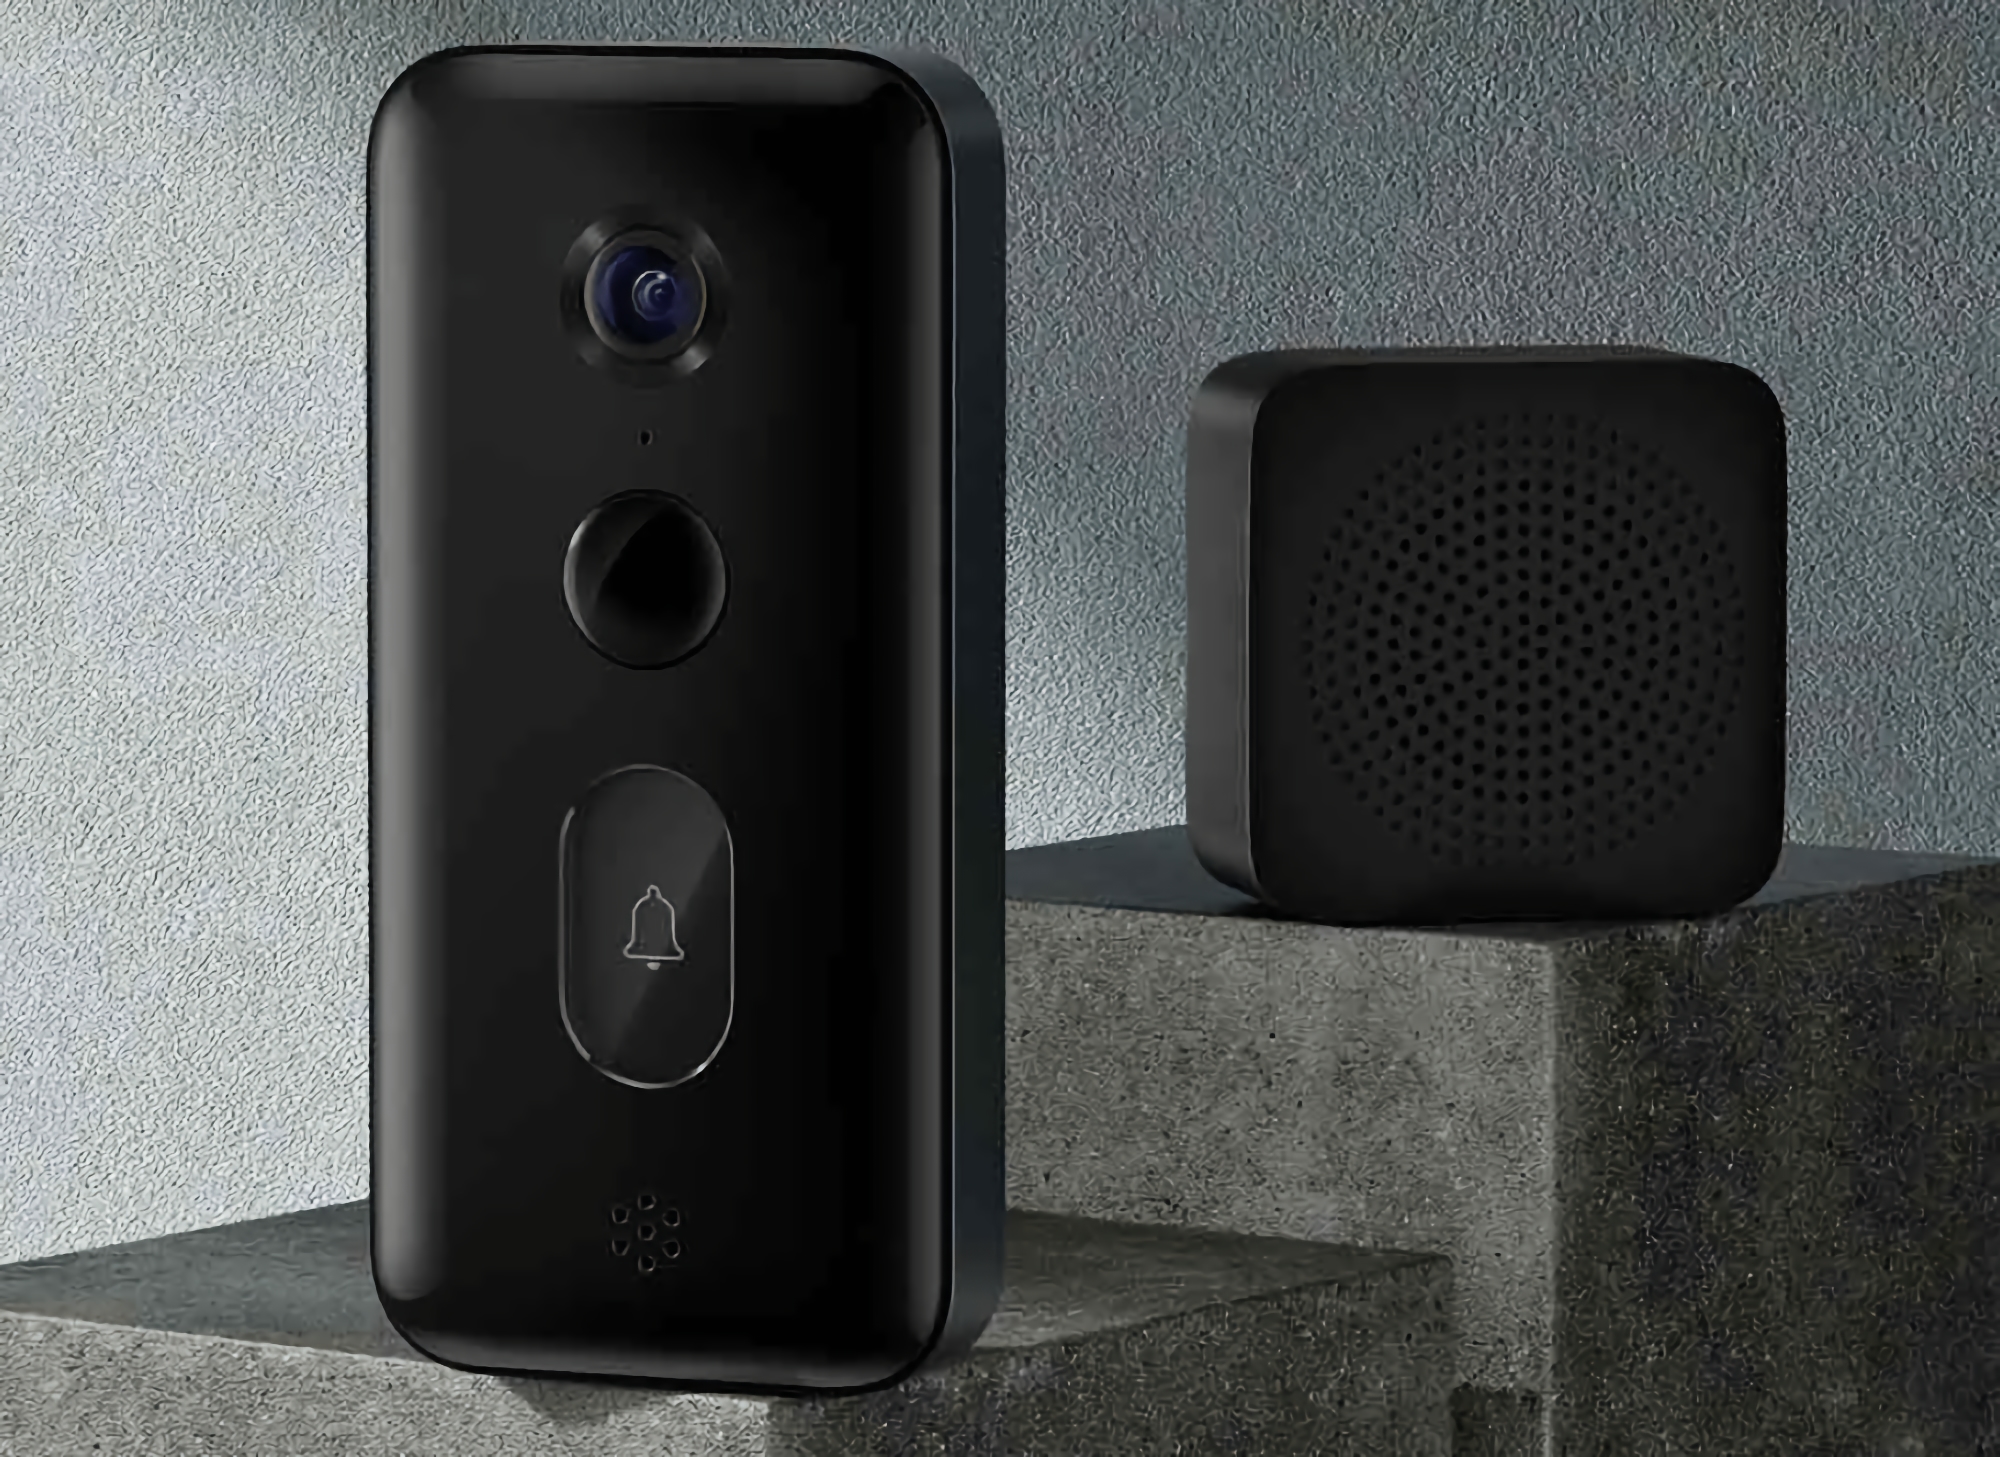 Xiaomi Smart Doorbell 3: умный дверной звонок c батареей на 5200 мАч, функцией изменения голоса и широкоугольной камерой